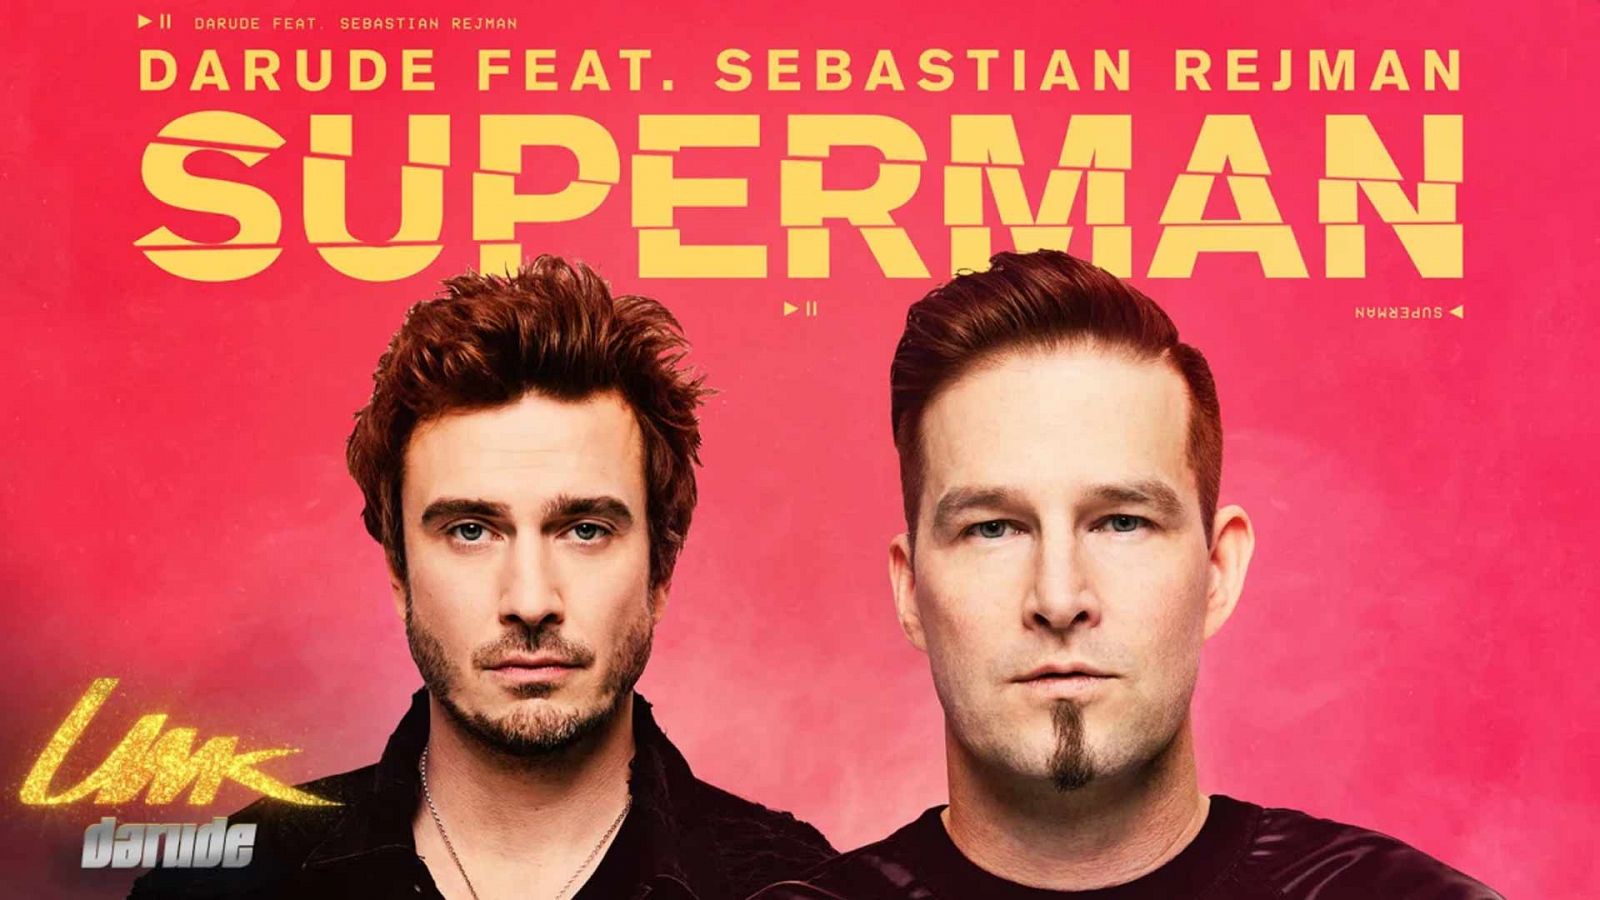 Finlandia estrena "Superman", su segunda canción candidata para Eurovisión 2019, de Darude y Sebastian Rejman